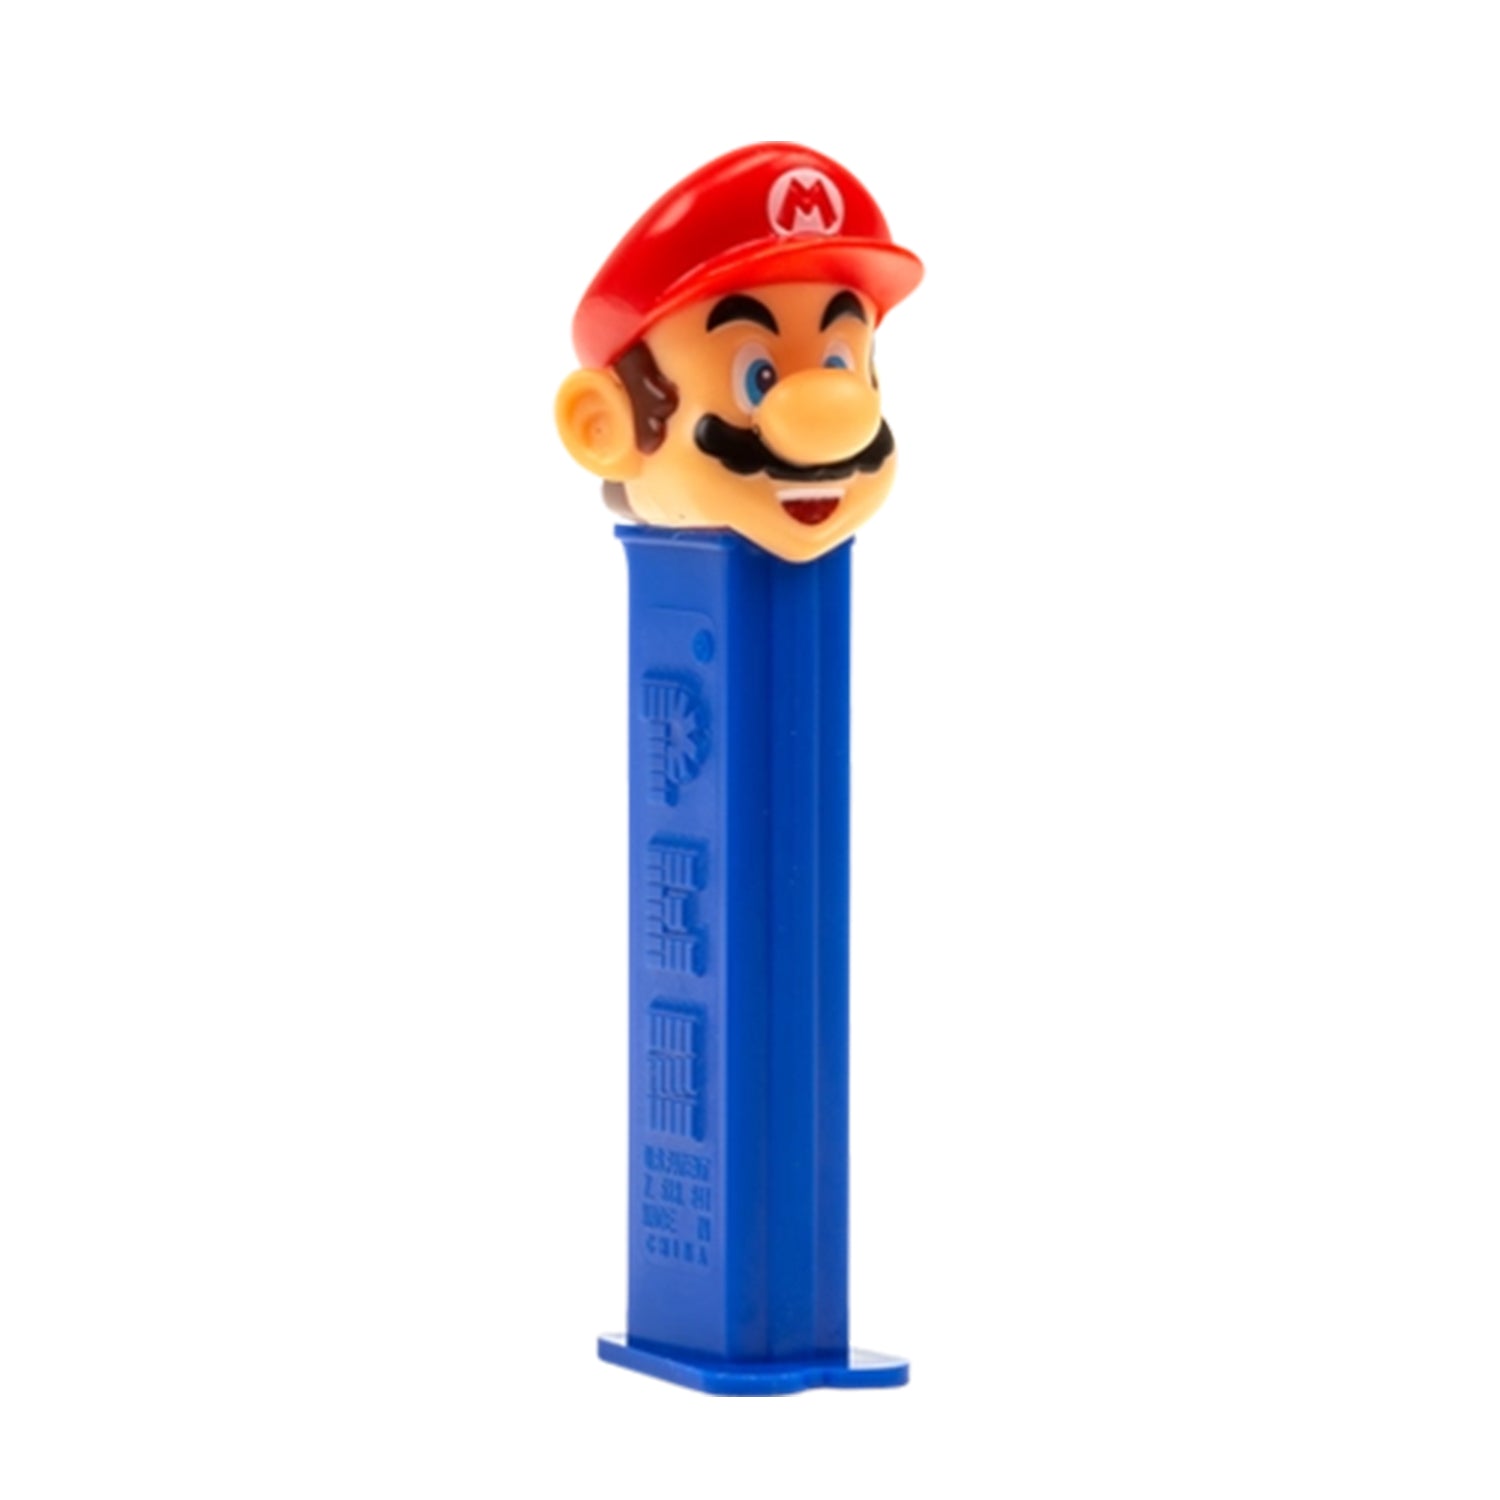 PEZ Nintendo Super Mario Bros (1 stuk) - van PEZ - Nu voor maar €2.75 bij Mijn Snoepgoed